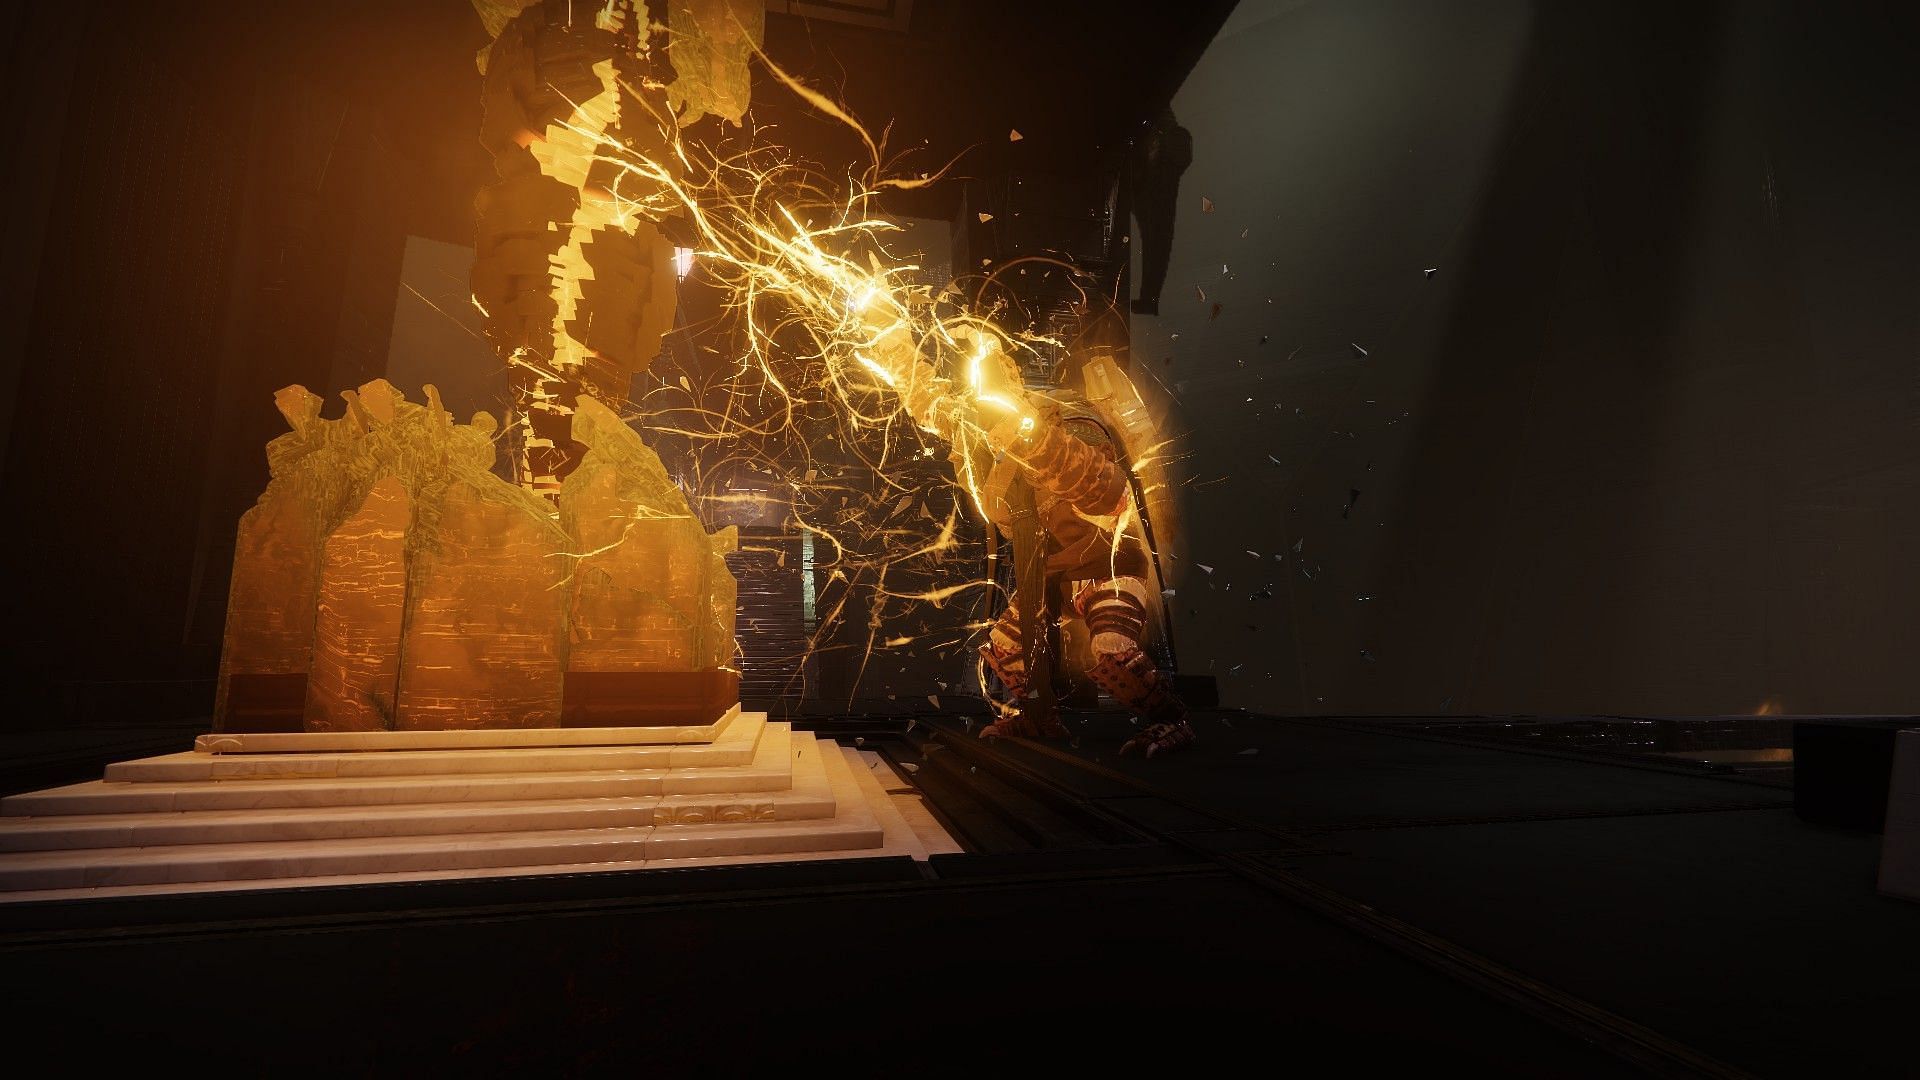 The Caretaker boss for the second encounter (Image via Destiny 2)